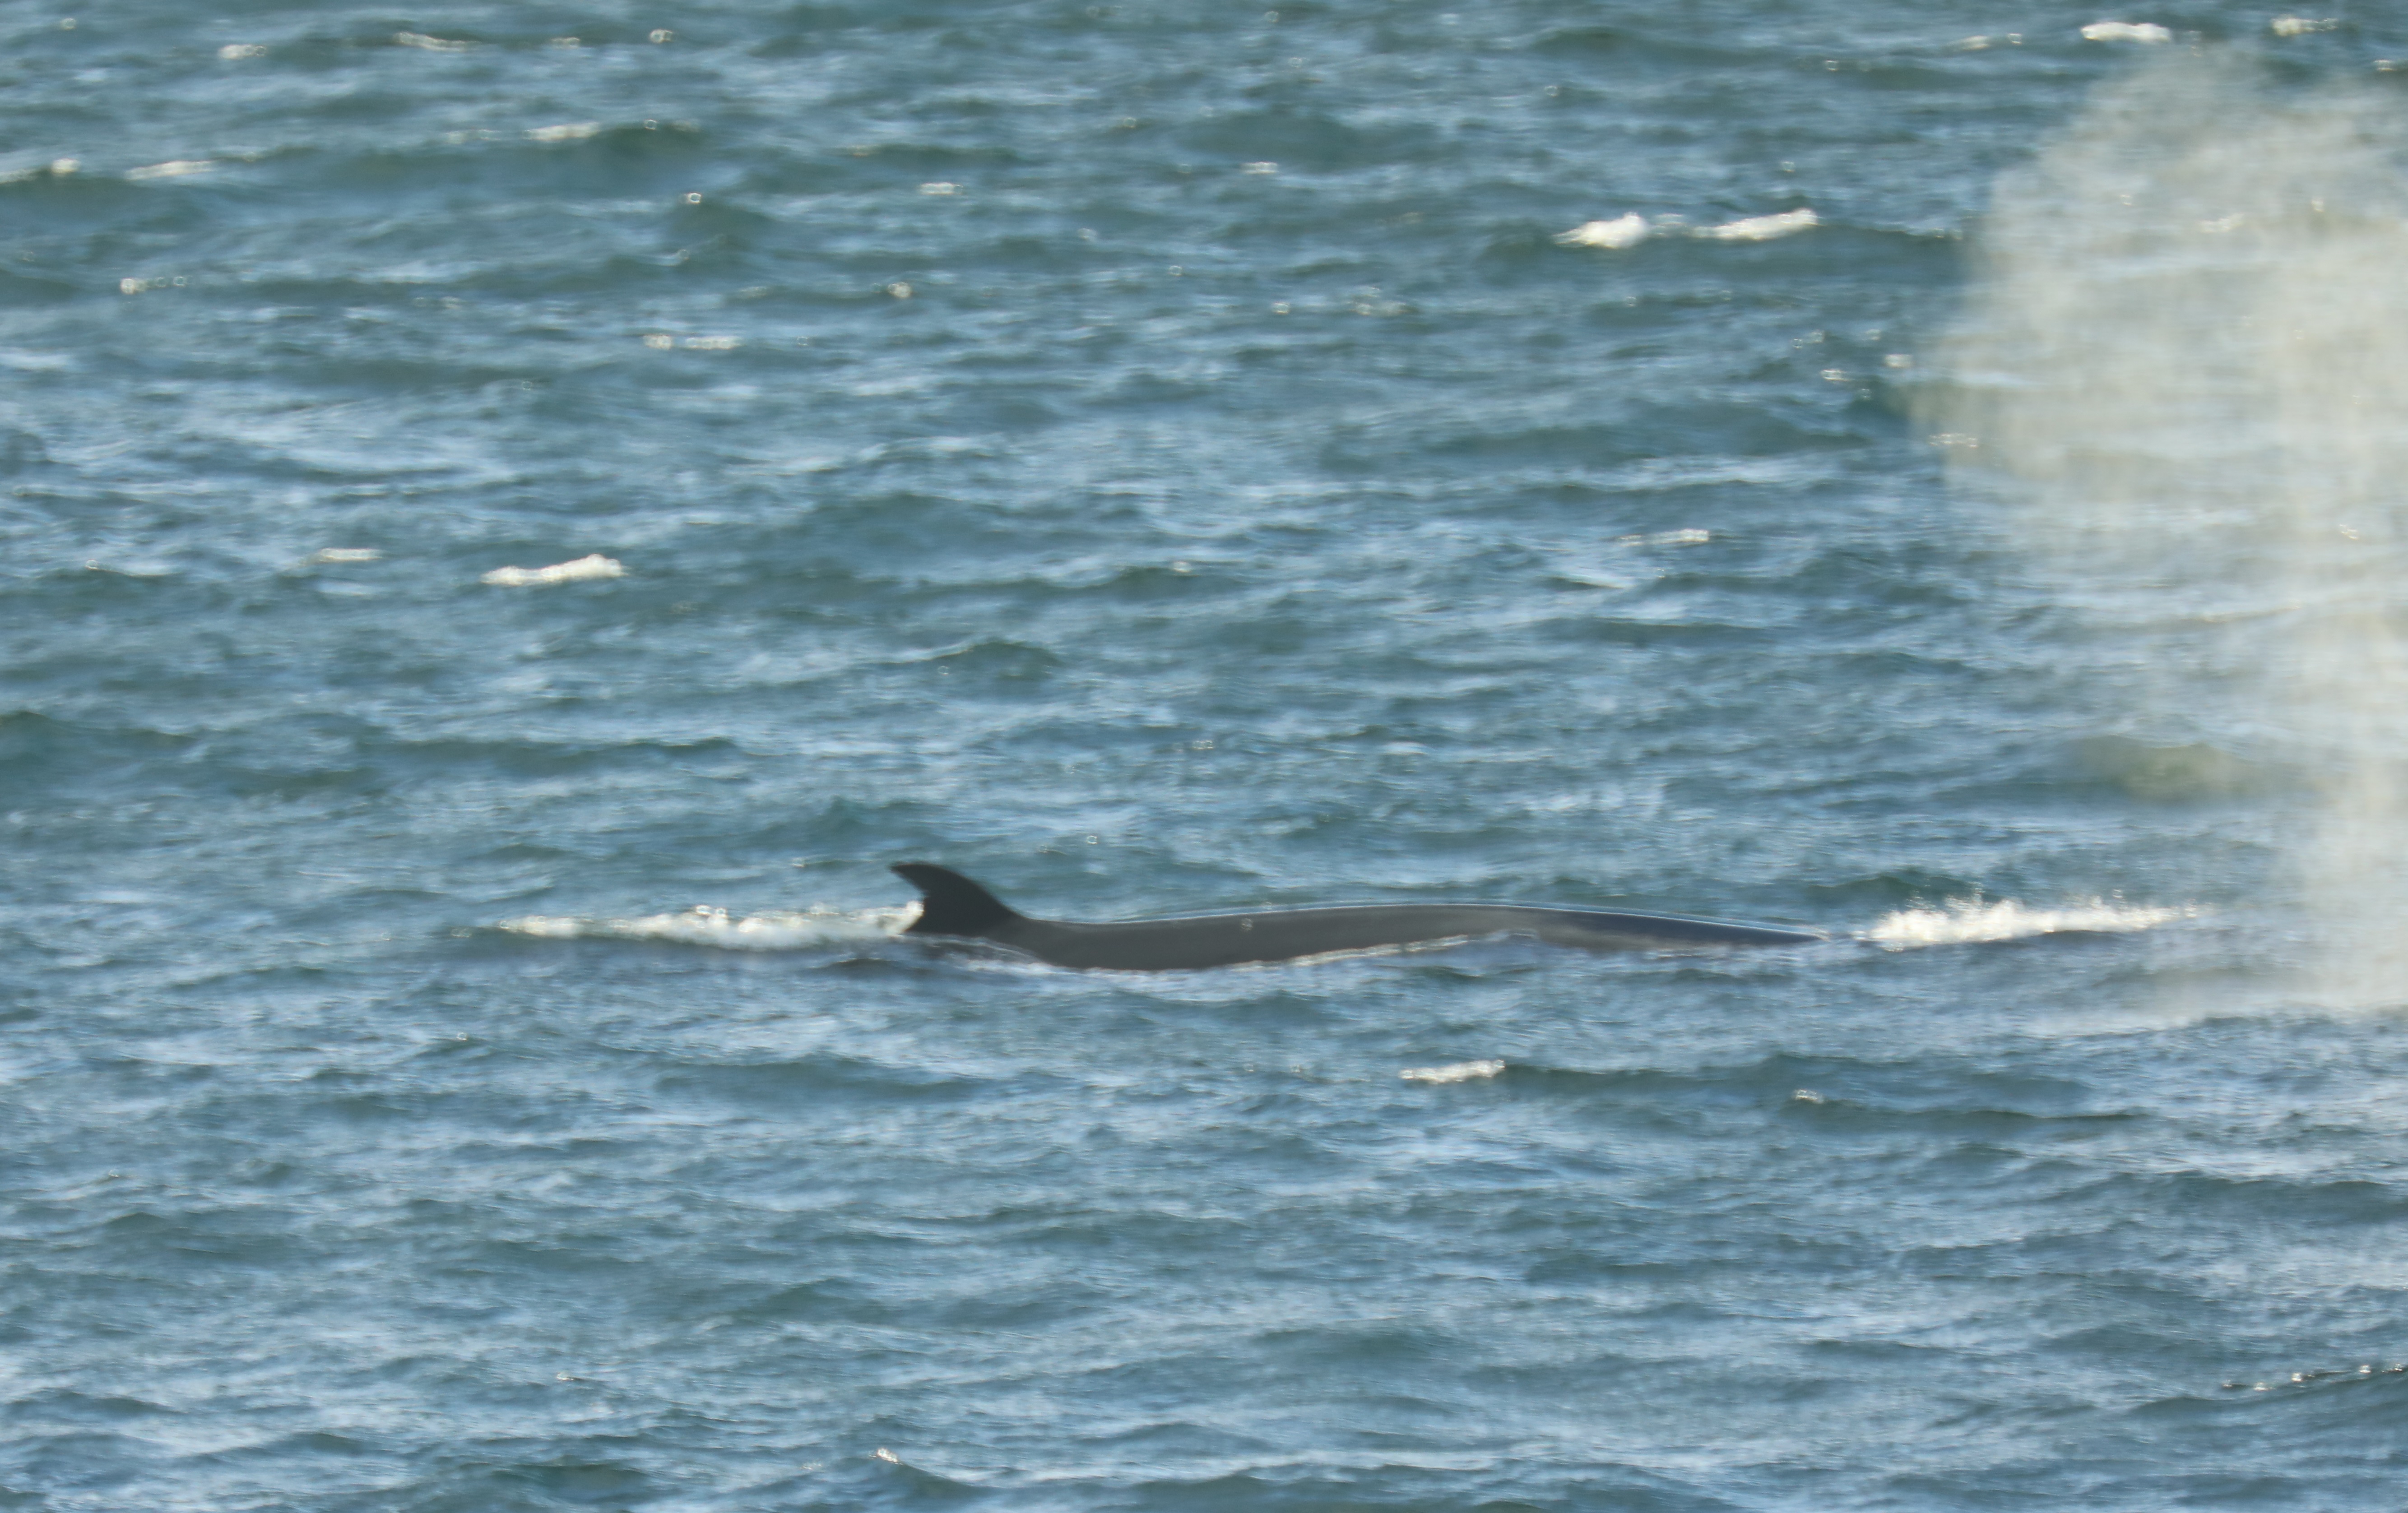 A sei whale seen near the ship.